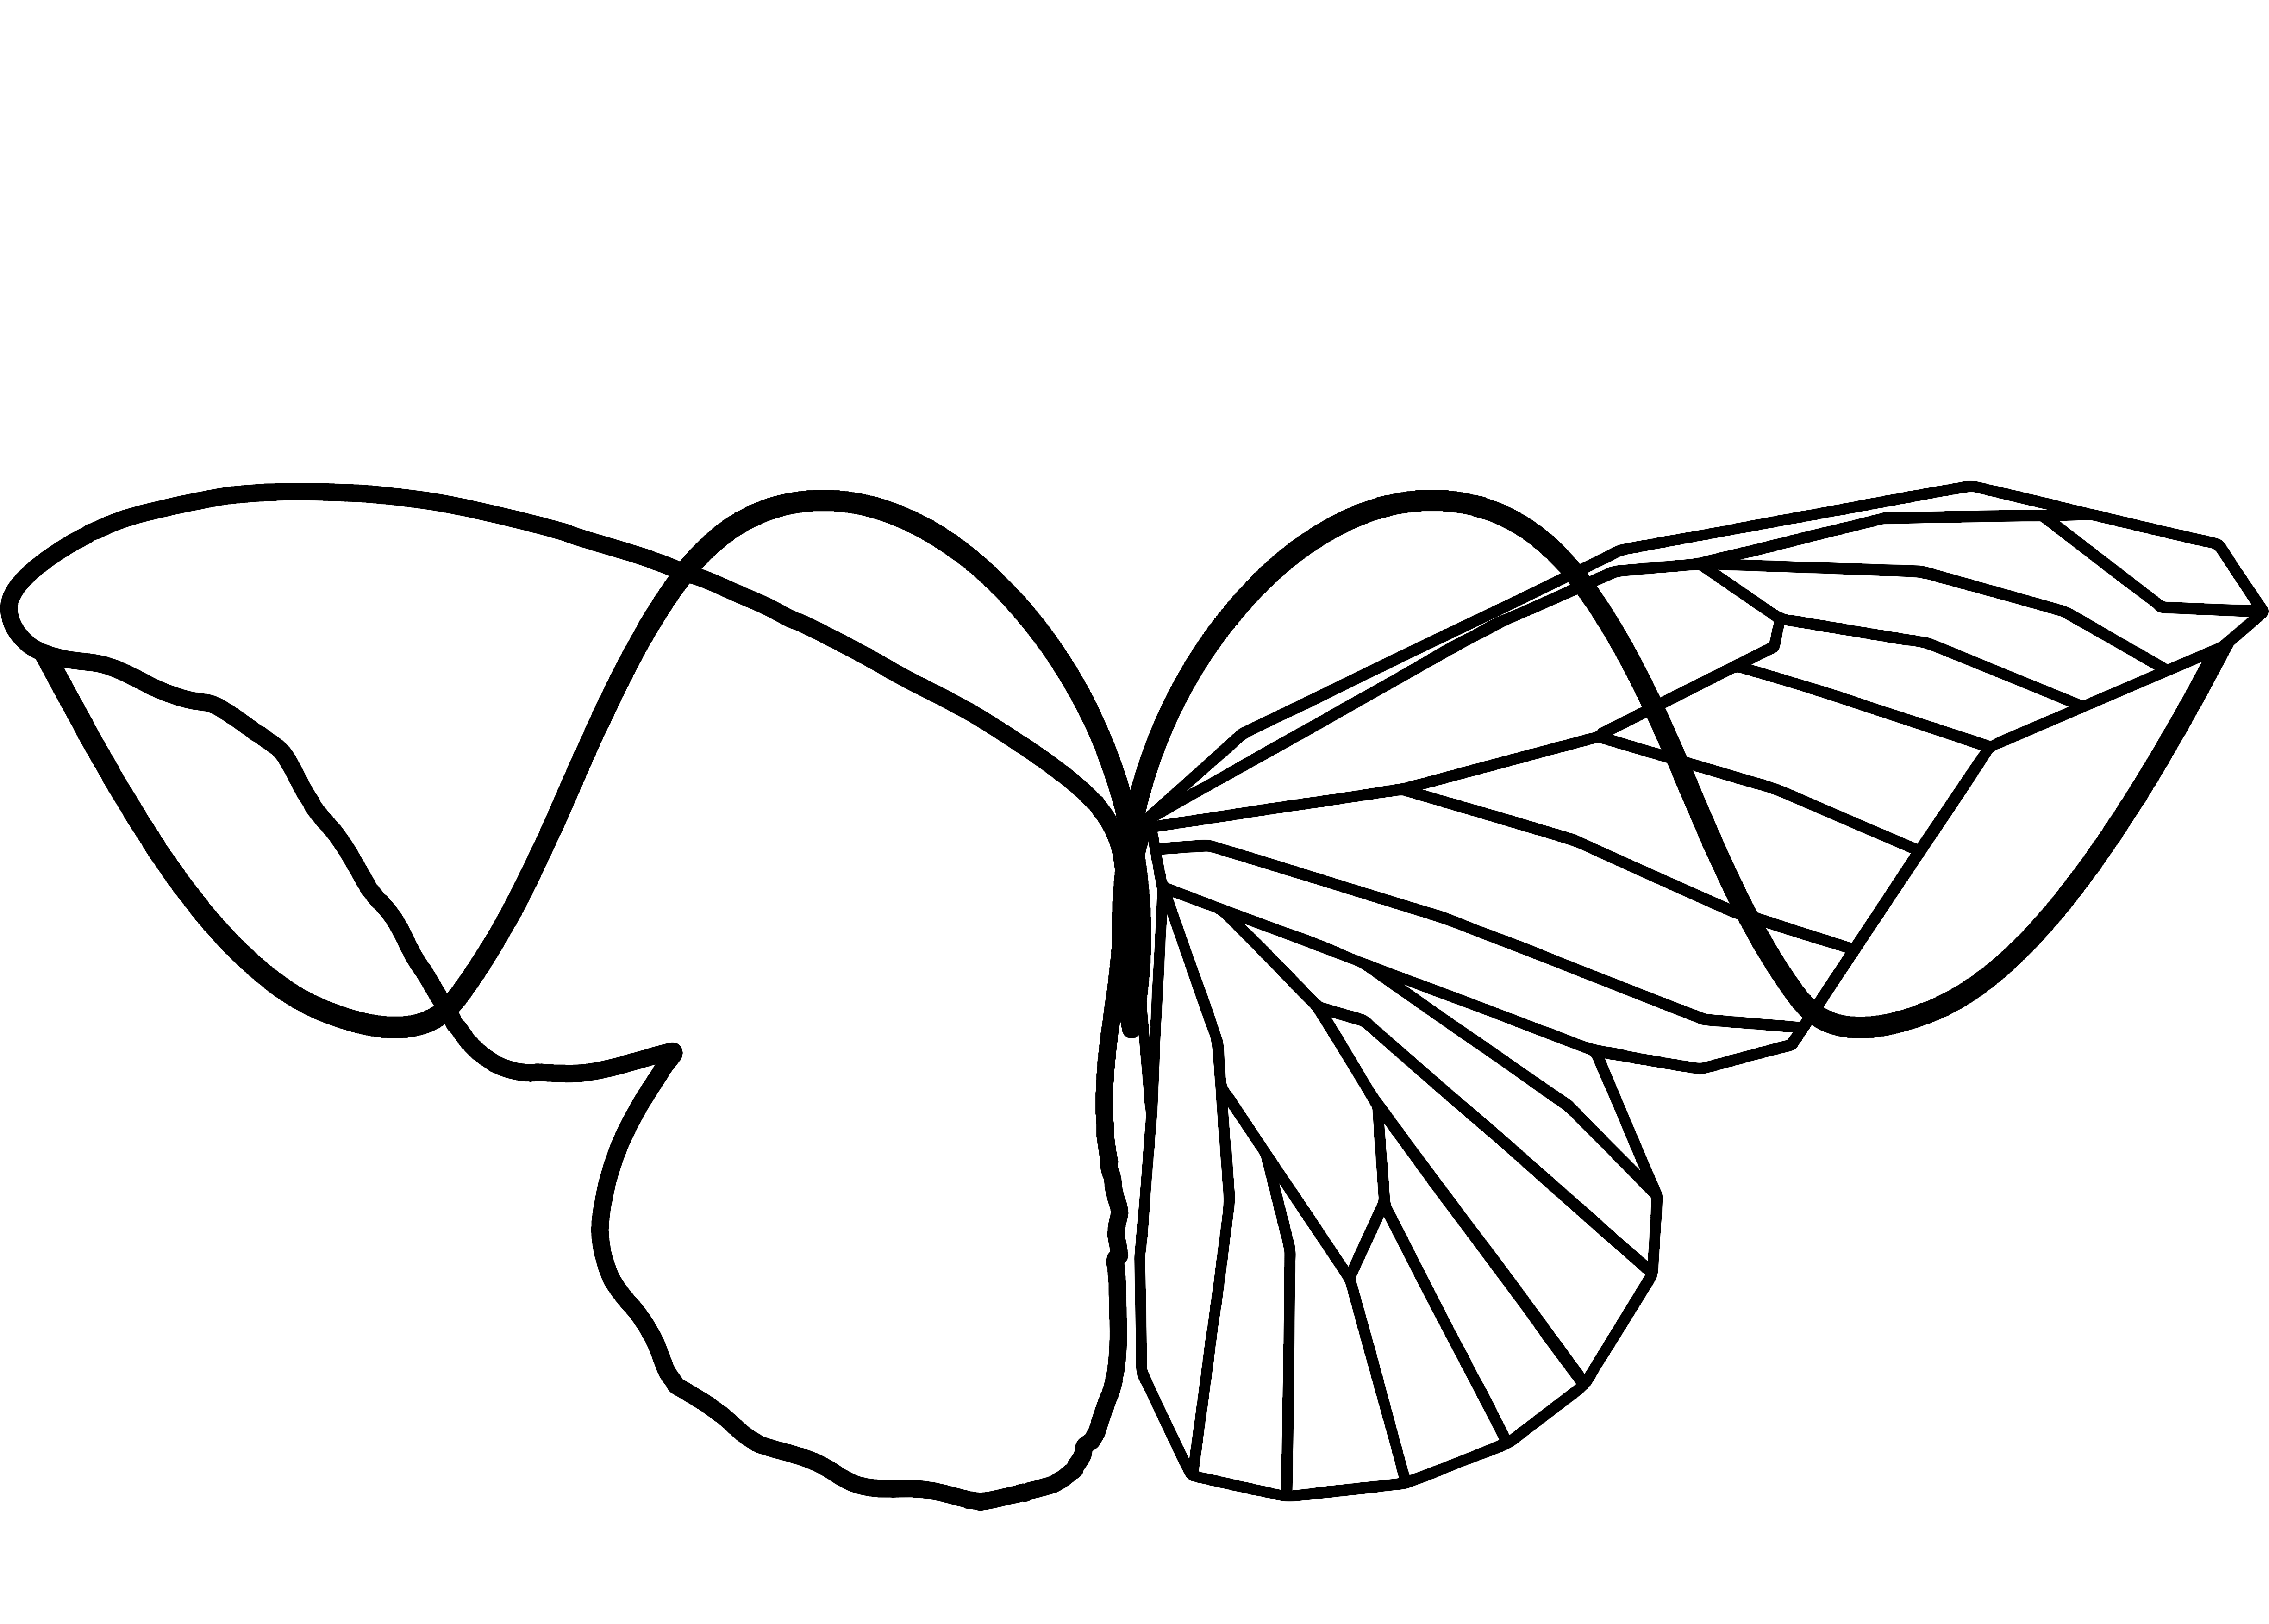 Logo distintivo de la empresa KENOPSIA relacionada con la Gestión y Asesoramiento en Marketing, Diseño Gráfico y Editorial, además del Diseño y Desarrollo Web a medida incluyendo el E-commerce o Comercio Electróico.